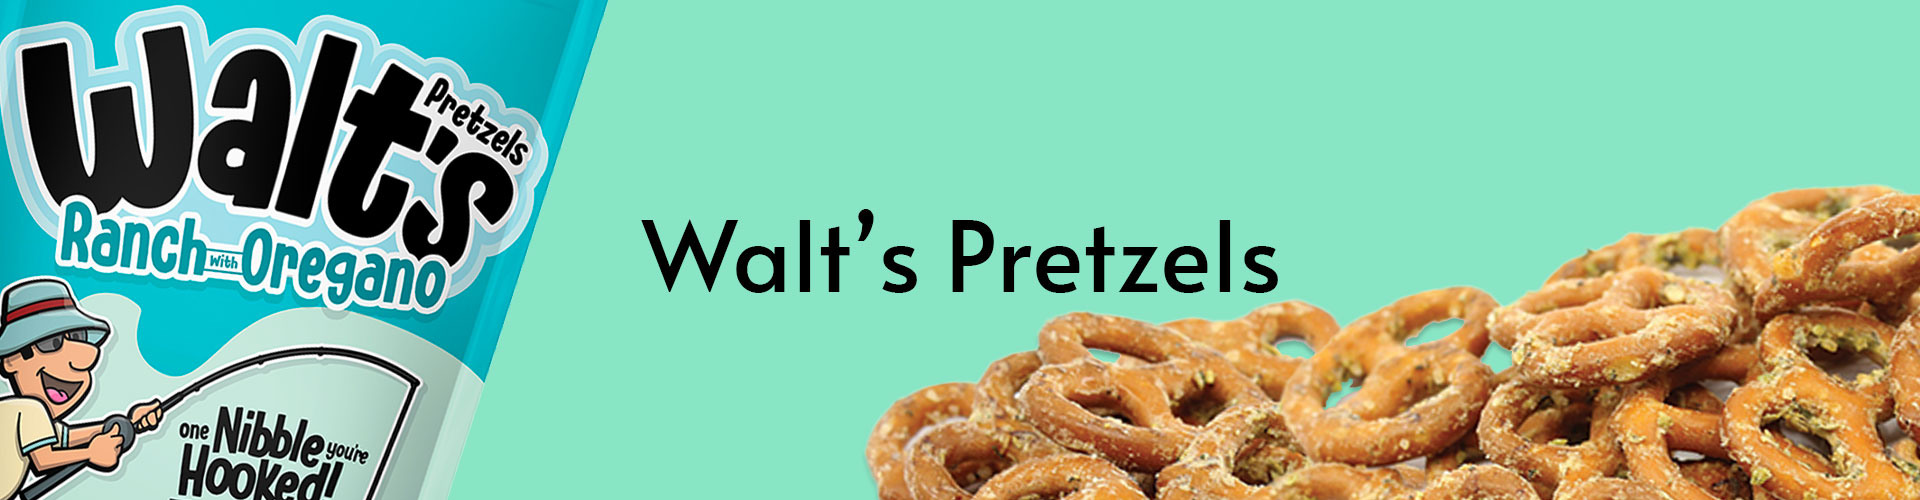 Walt's Pretzels